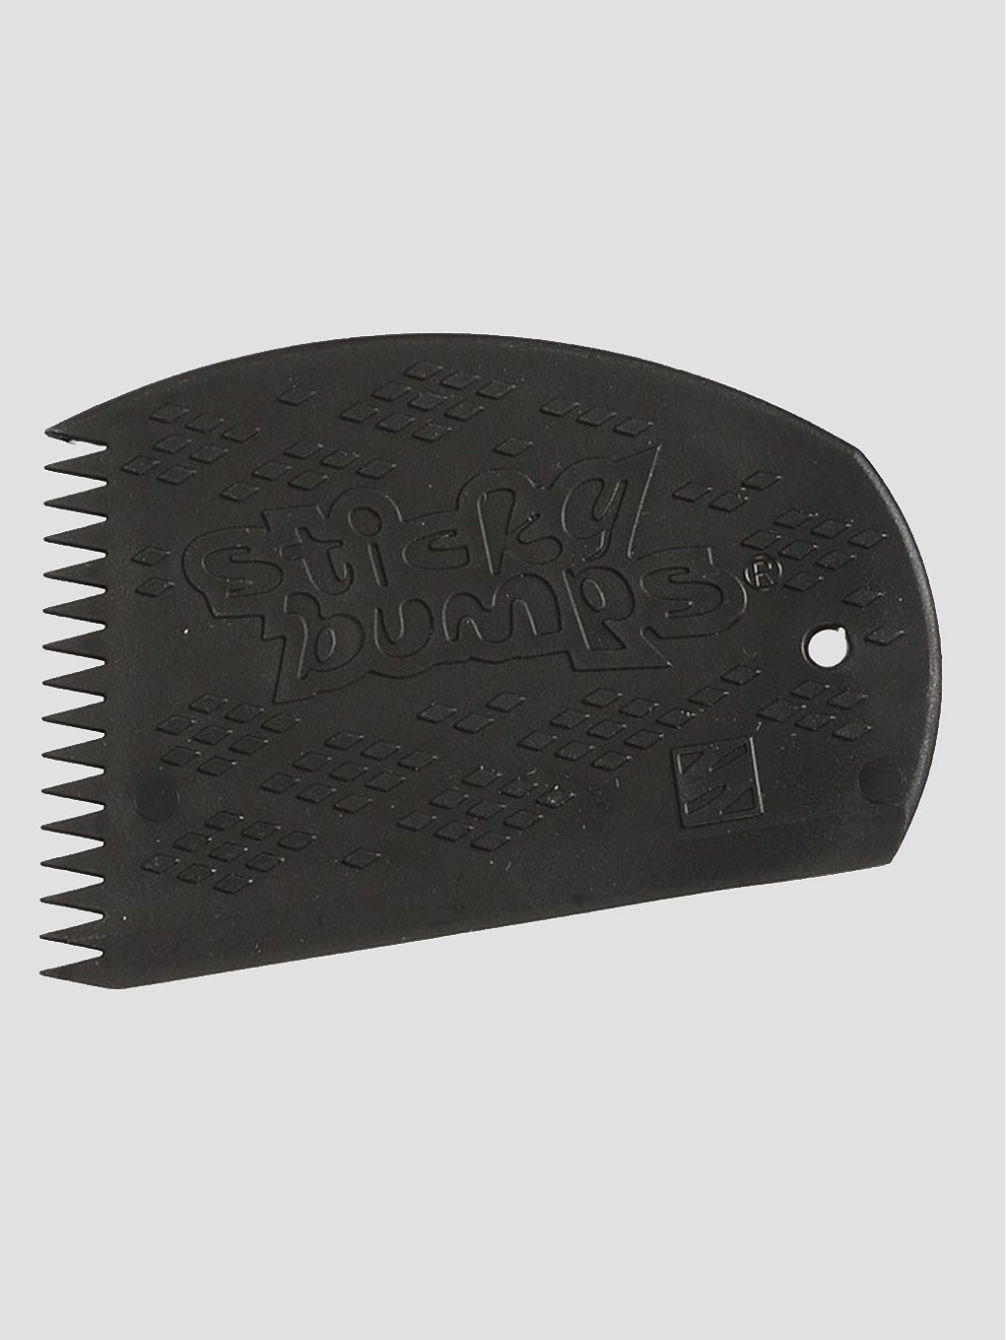 The Original Surf wax Comb